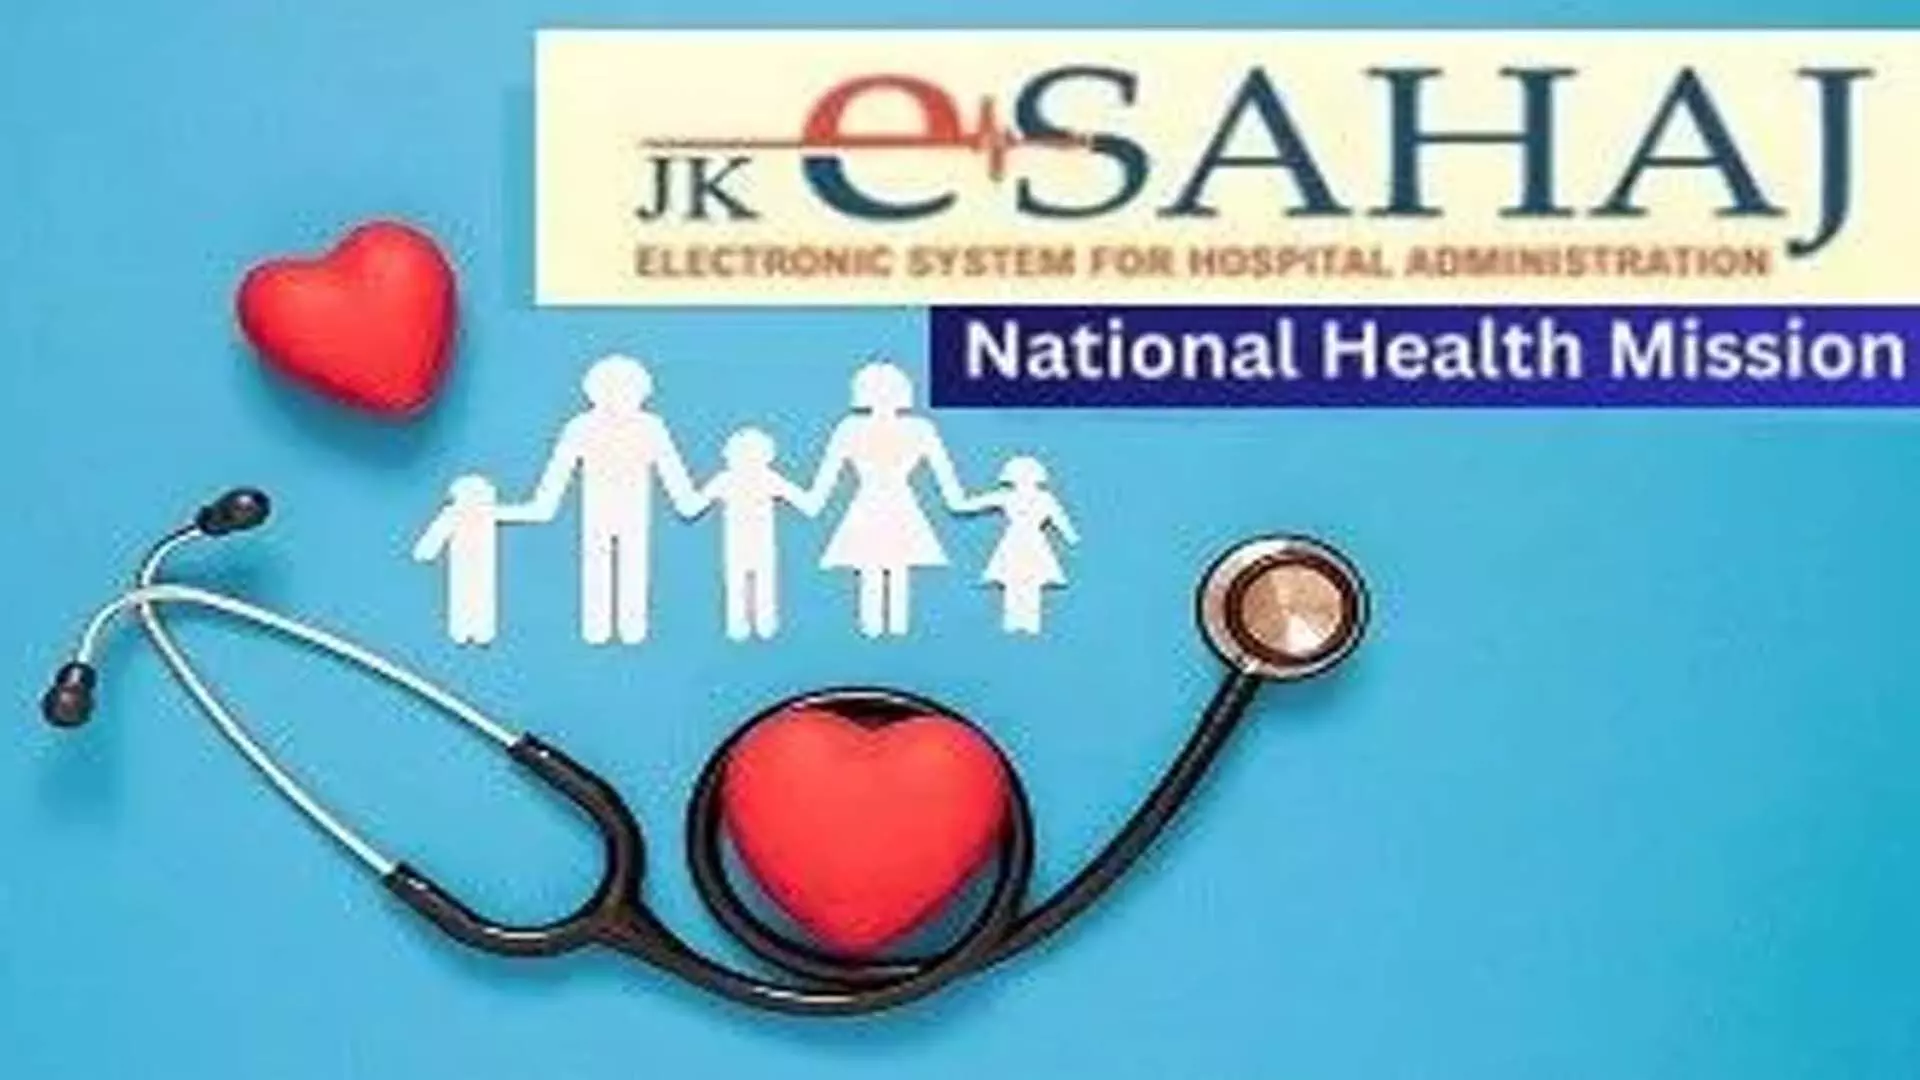 एनएचएम ने जनवरी के लिए जेके ई सहज पर सार्वजनिक स्वास्थ्य सुविधाओं की रैंकिंग जारी की